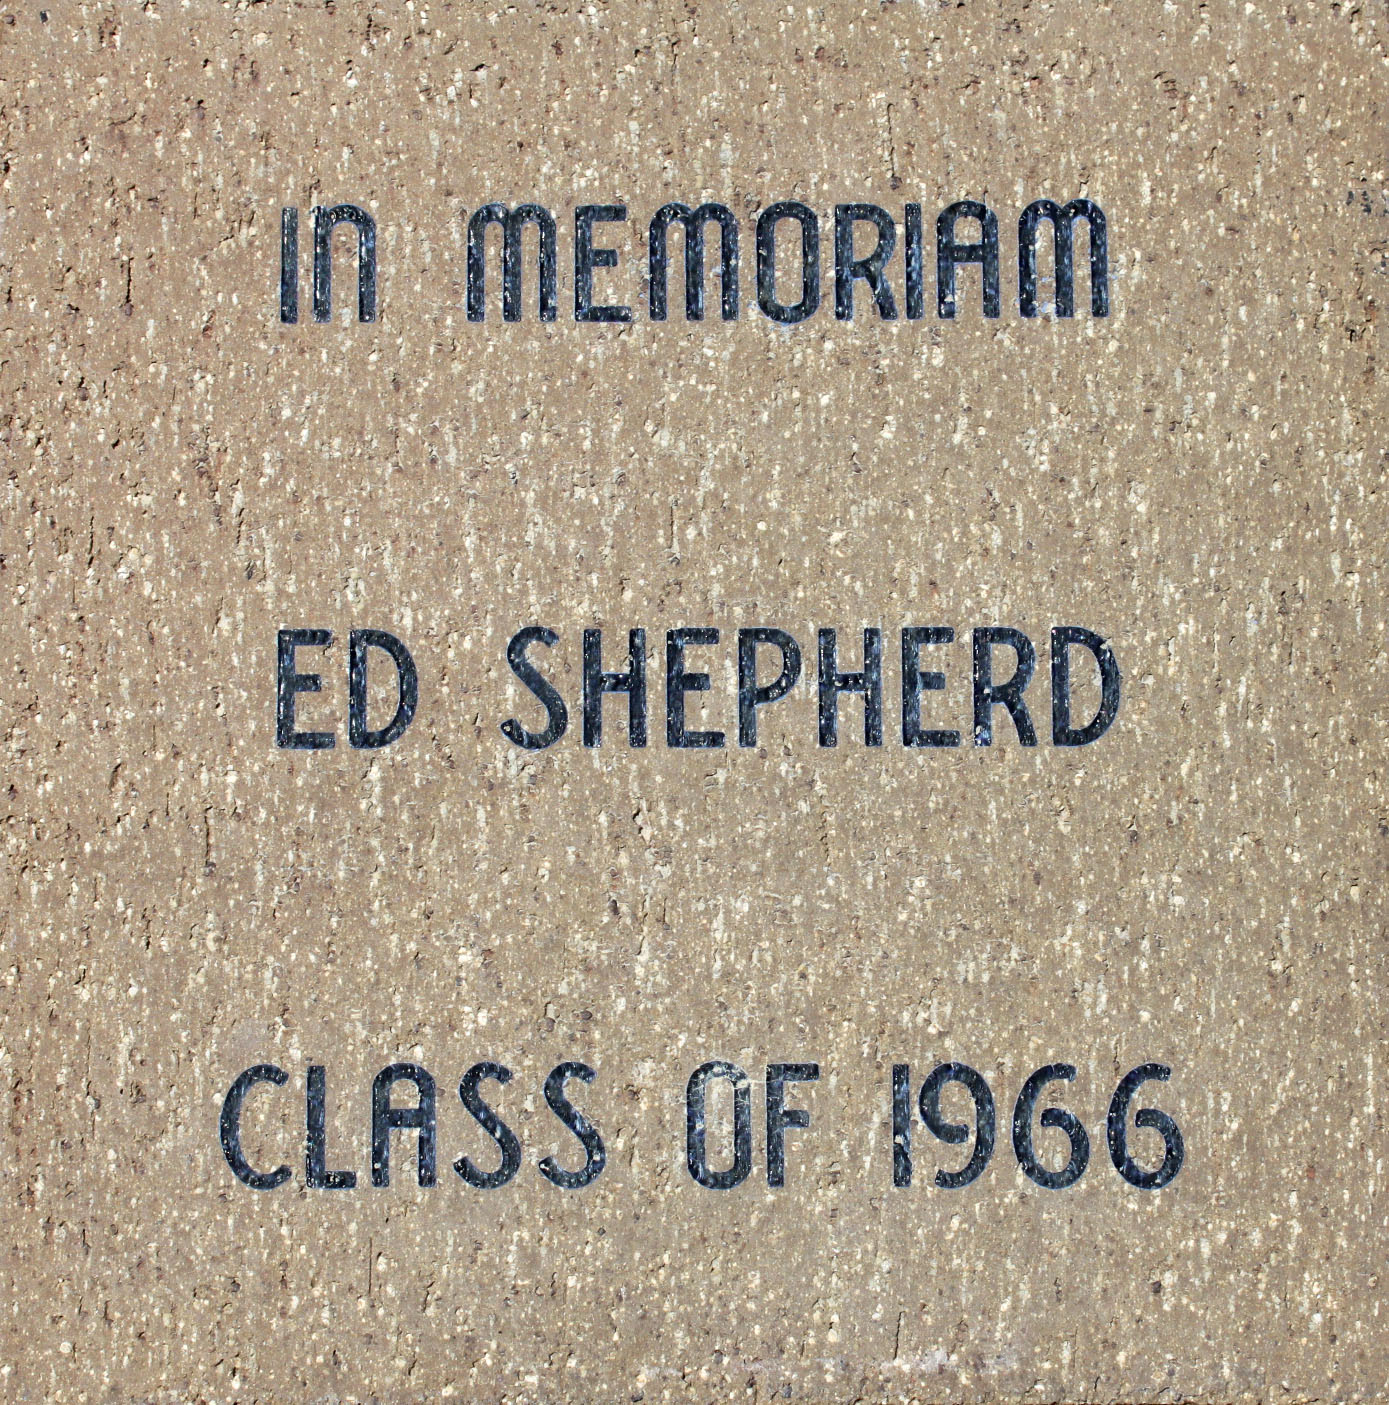 Shepherd, Ed